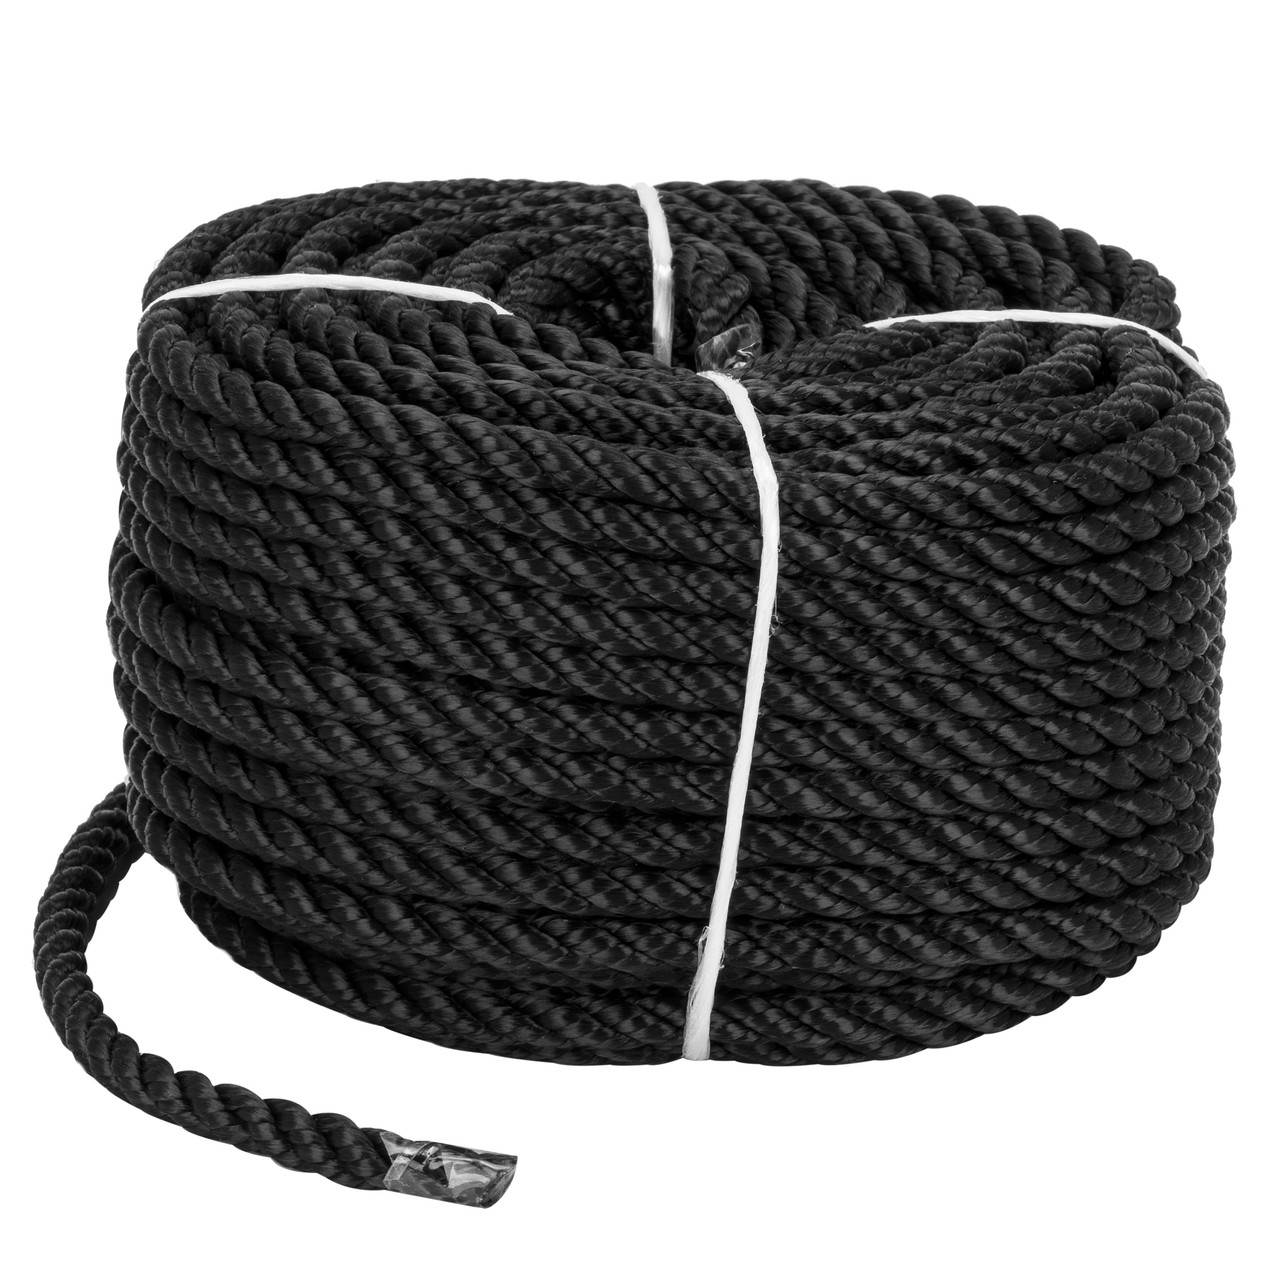 Мотузка для швартування і якір поліестер універсальна трипрядна 8 mm * 30 m чорна